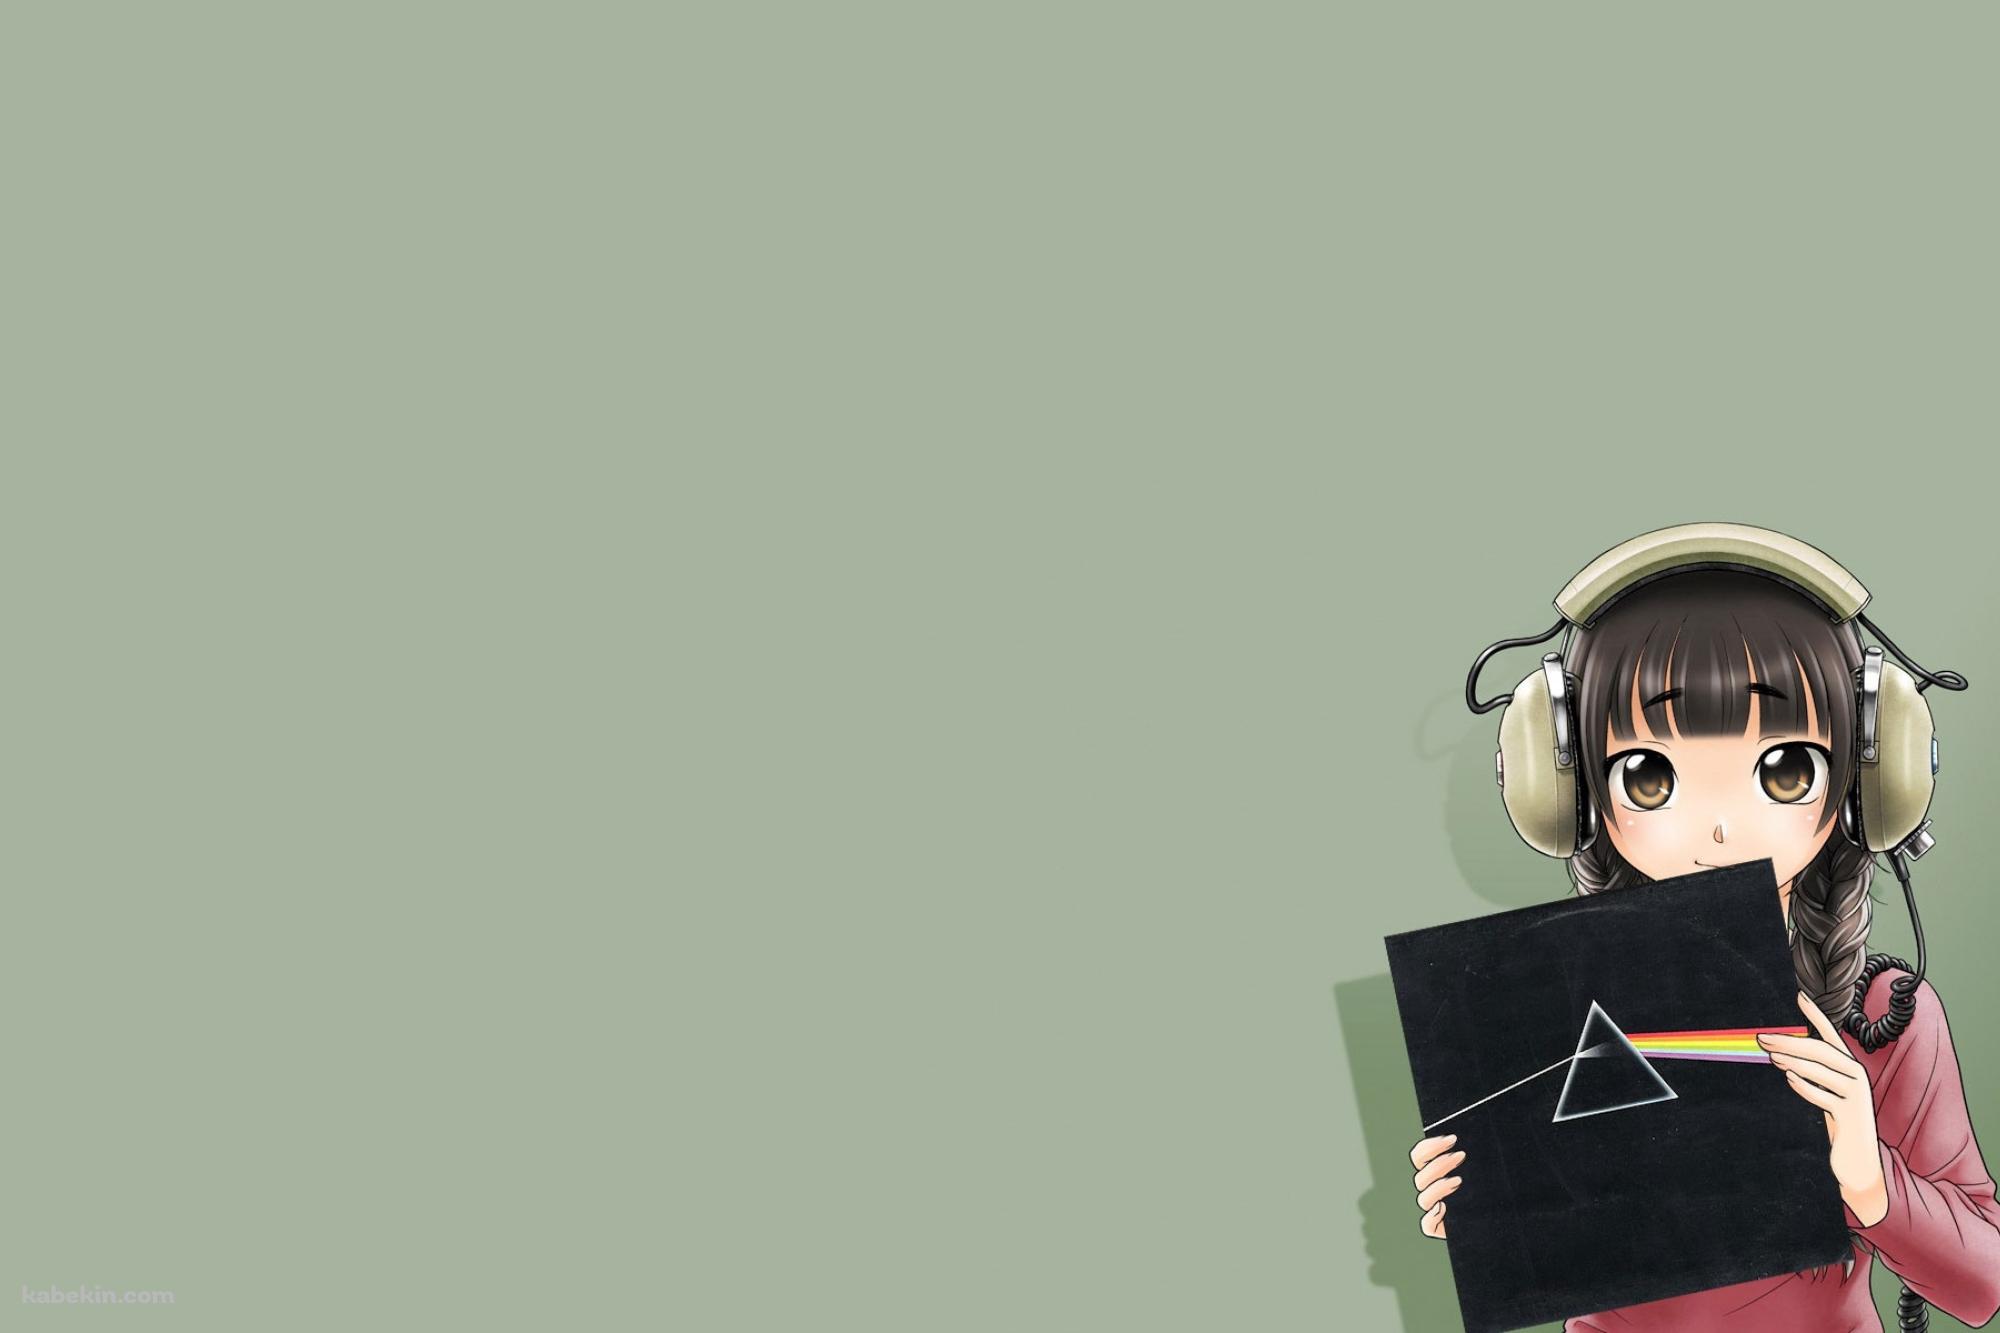 レコードジャケットを持つ女の子の壁紙(2000px x 1333px) 高画質 PC・デスクトップ用